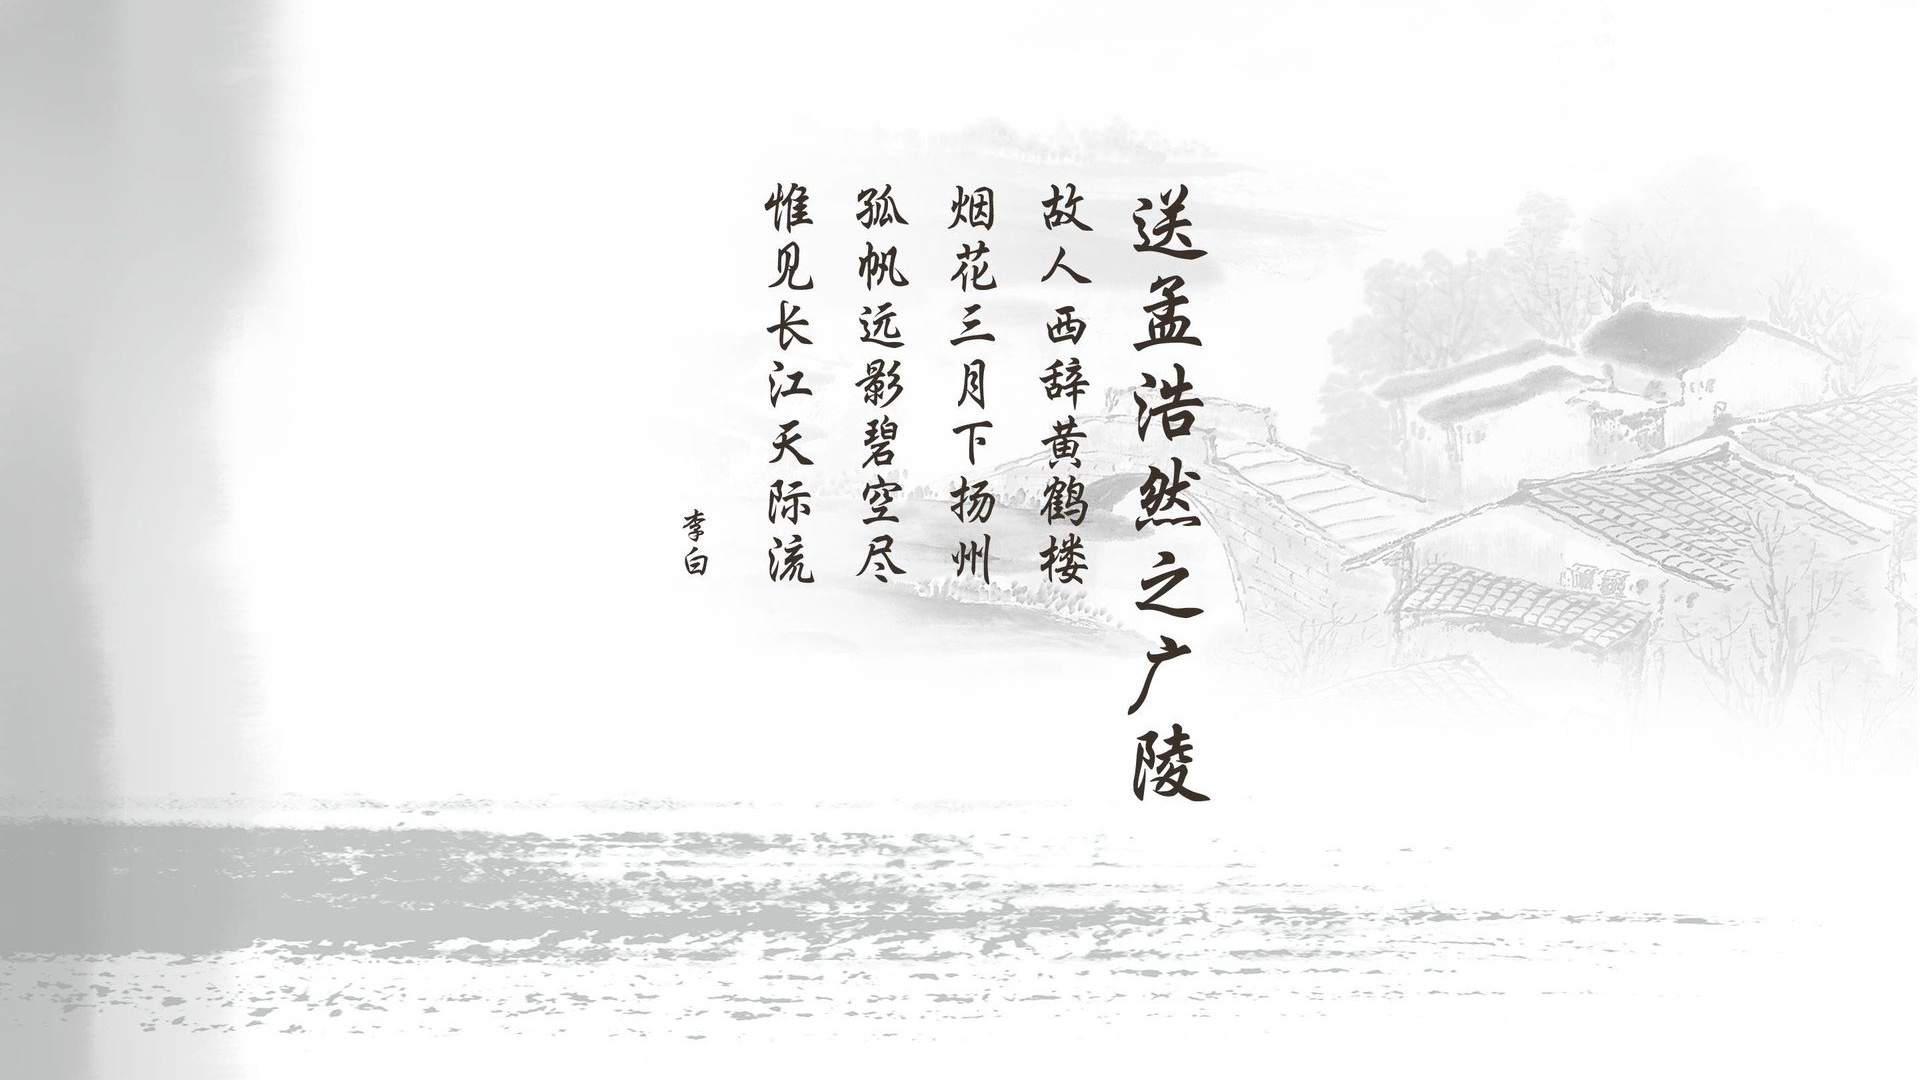 文字唐诗诗词李白送孟浩然之广陵中国风文字控壁纸